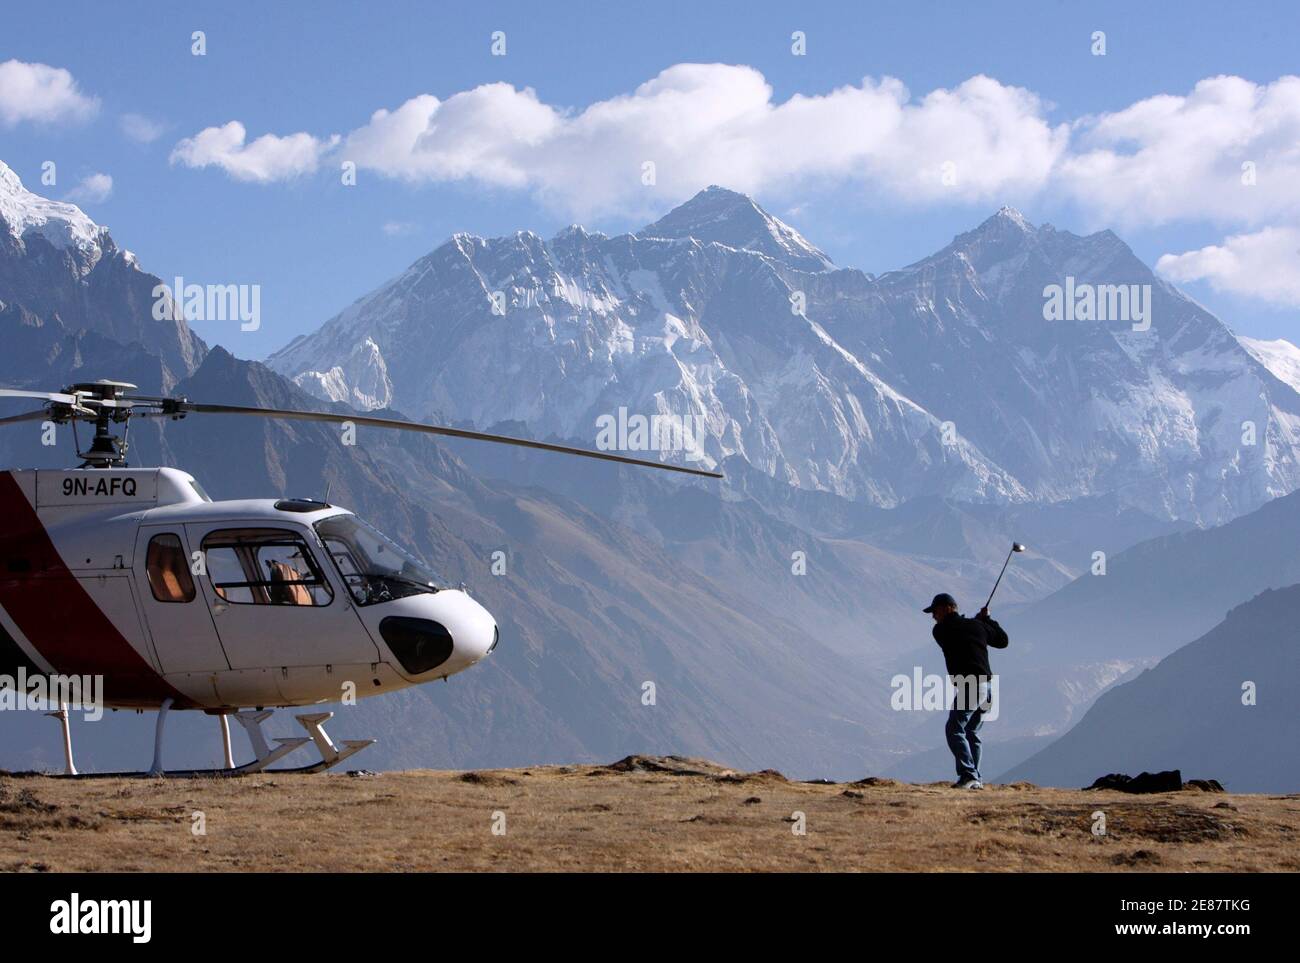 Ang Tshring Sherpa spielt einen Schuss in Kongde 5. März 2009. Der Amateurgolfer Ang Tshring, der Besitzer von Nepals größter inländischer Fluggesellschaft Yeti Airways, mietete einen Hubschrauber, um den Ort zu erreichen, da er seinen Golf an einem anderen Ort üben wollte. Ang Tshring, der ein Handicap von sieben hat, will Tiger Woods einladen, an diesem Ort, der mehr als 4,420 Meter (14,500 Fuß) über dem Meeresspiegel liegt, ein paar Schüsse zu spielen. Der Mount Everest, der höchste Gipfel der Welt mit 8,848 Metern (29,029 ft), ist im Hintergrund zu sehen. REUTERS/Gopal Chitrakar (NEPAL) Stockfoto